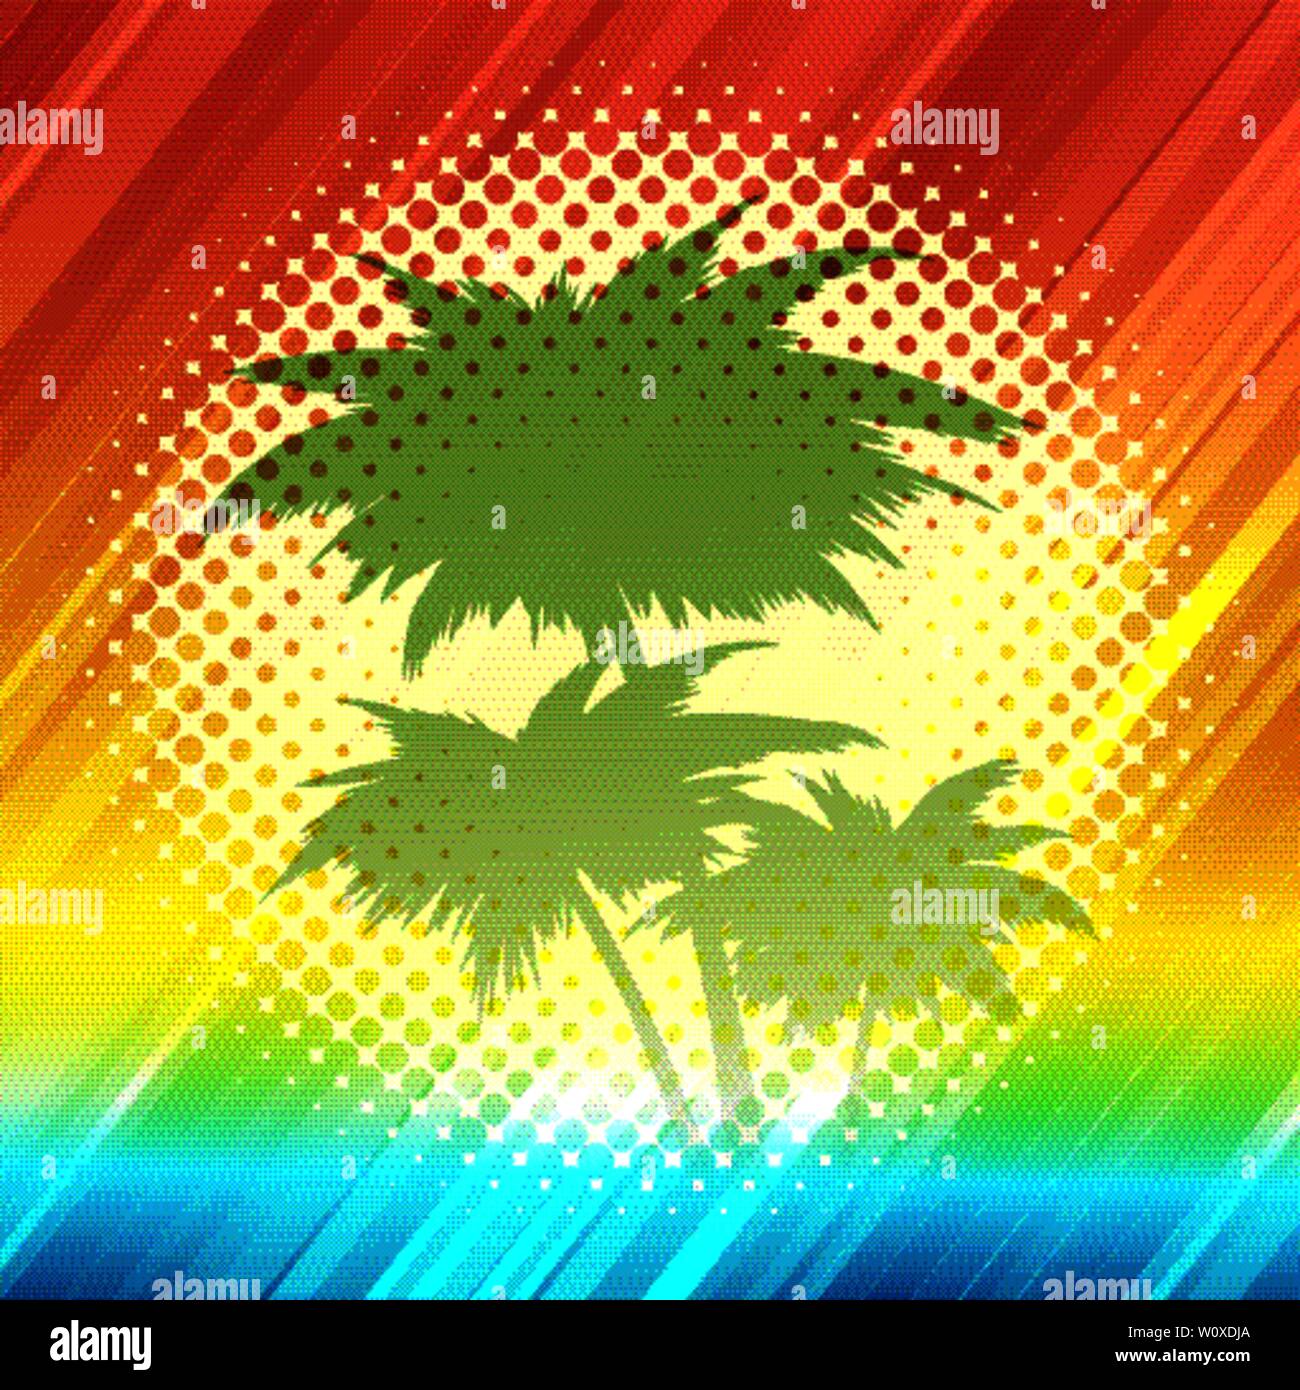 Palm Tree Silhouetten auf eine rasterungs Sonnenuntergang Hintergrund. Sommer Retro Design. Vector Illustration. Stock Vektor